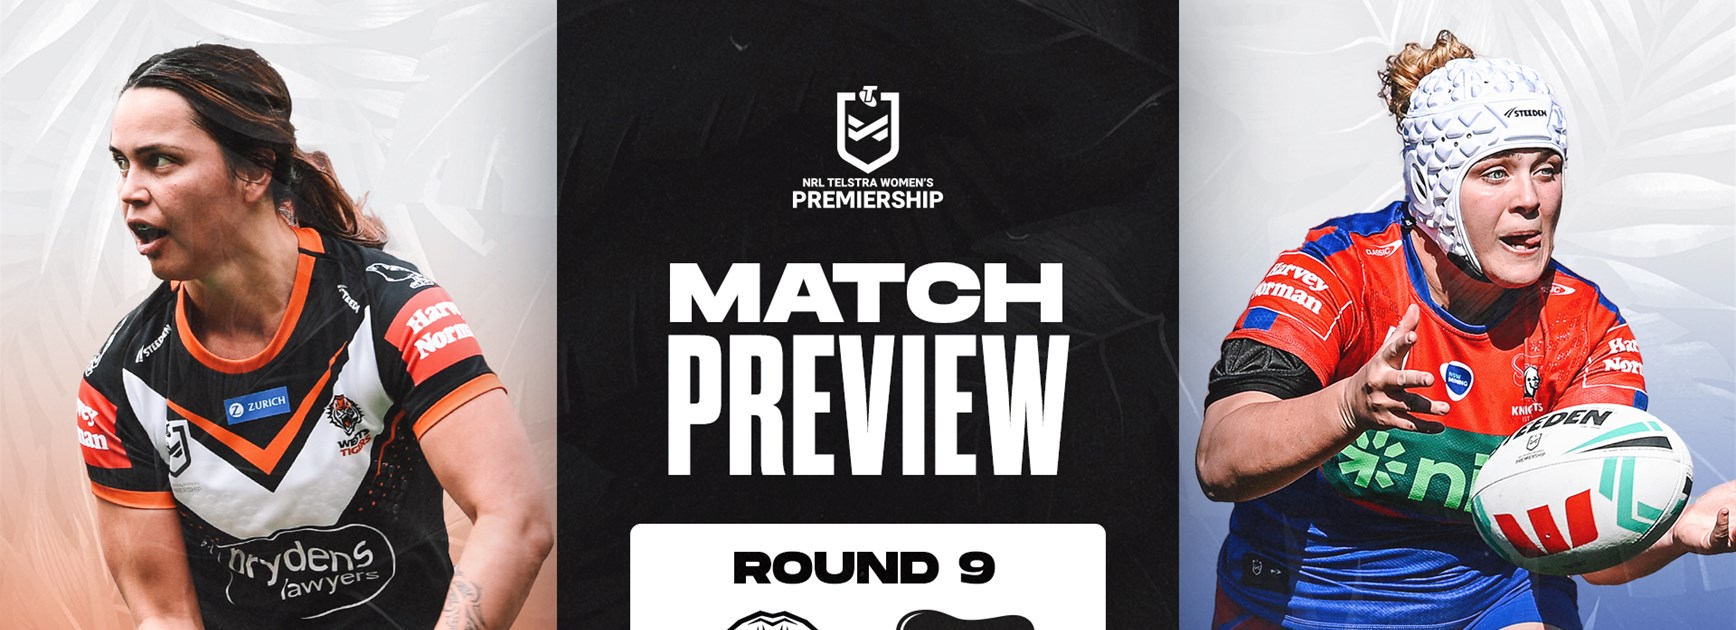 Match Preview: NRLW Round 9 vs Knights